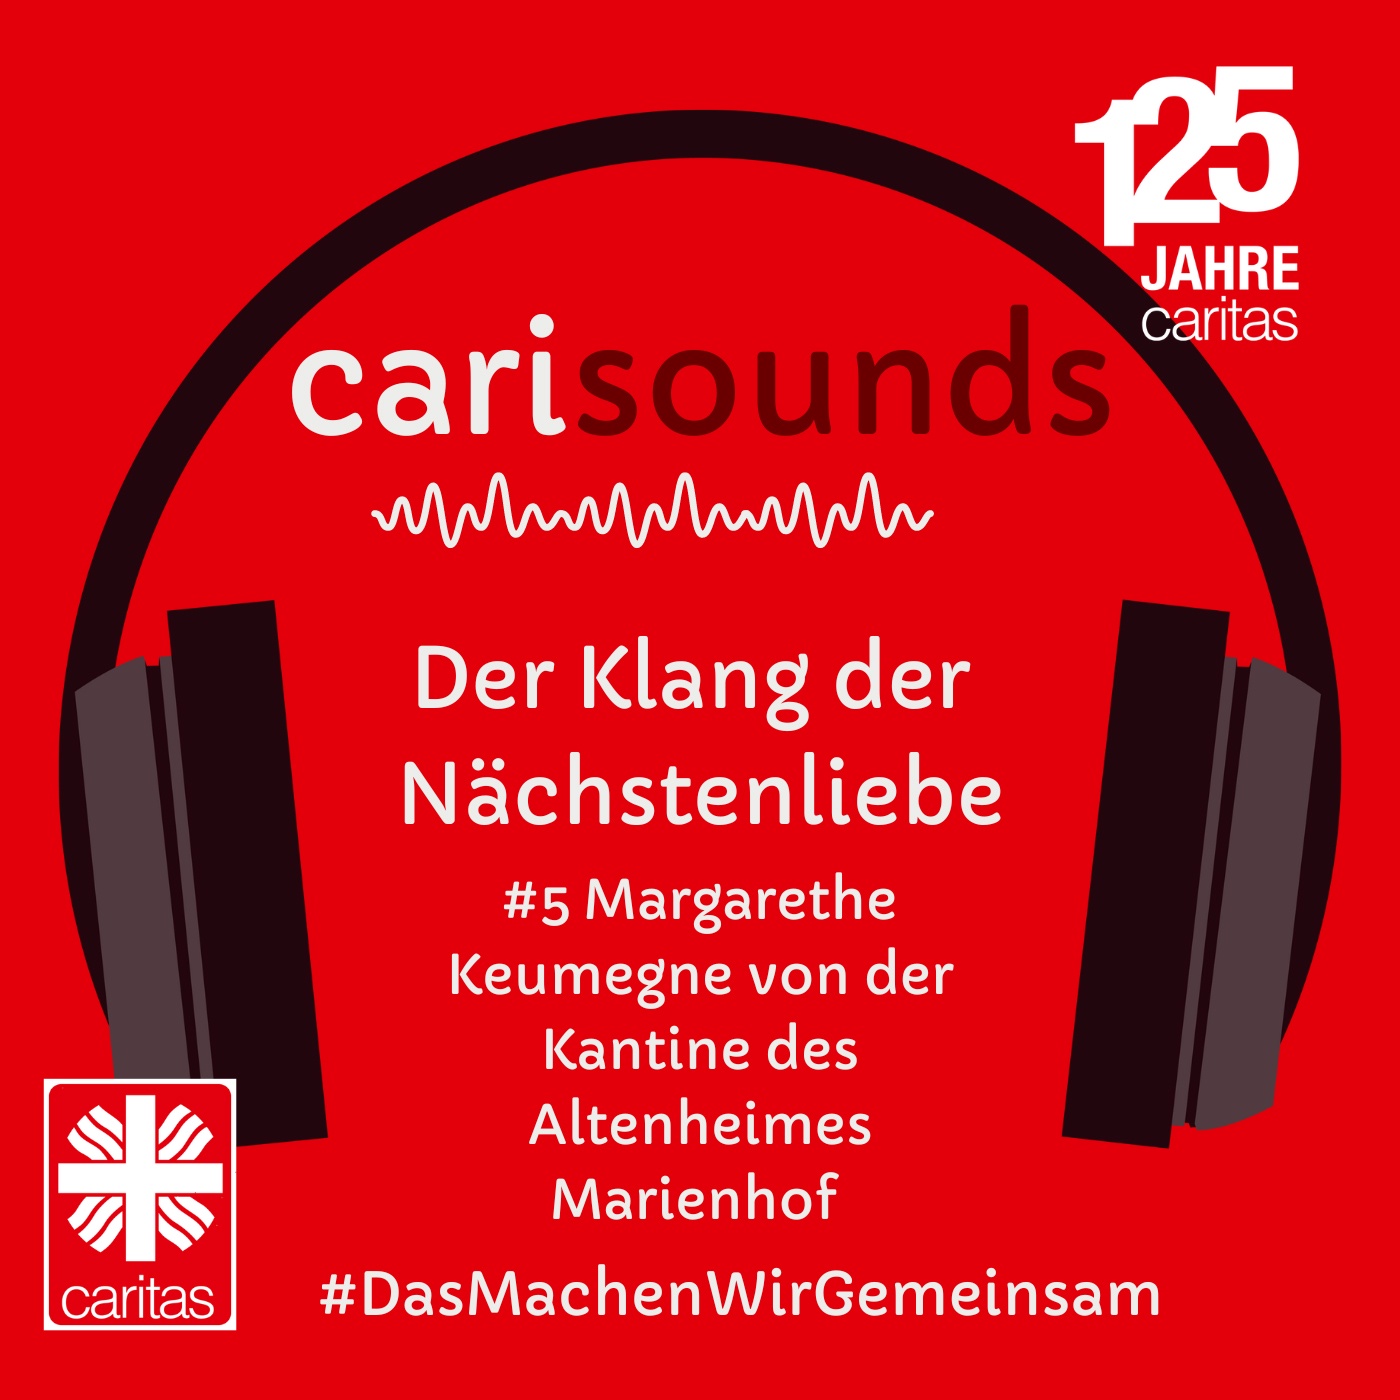 #5 carisounds - Der Klang der Nächstenliebe - Margarethe Keumegne von der Kantine des Altenheims Marienhof